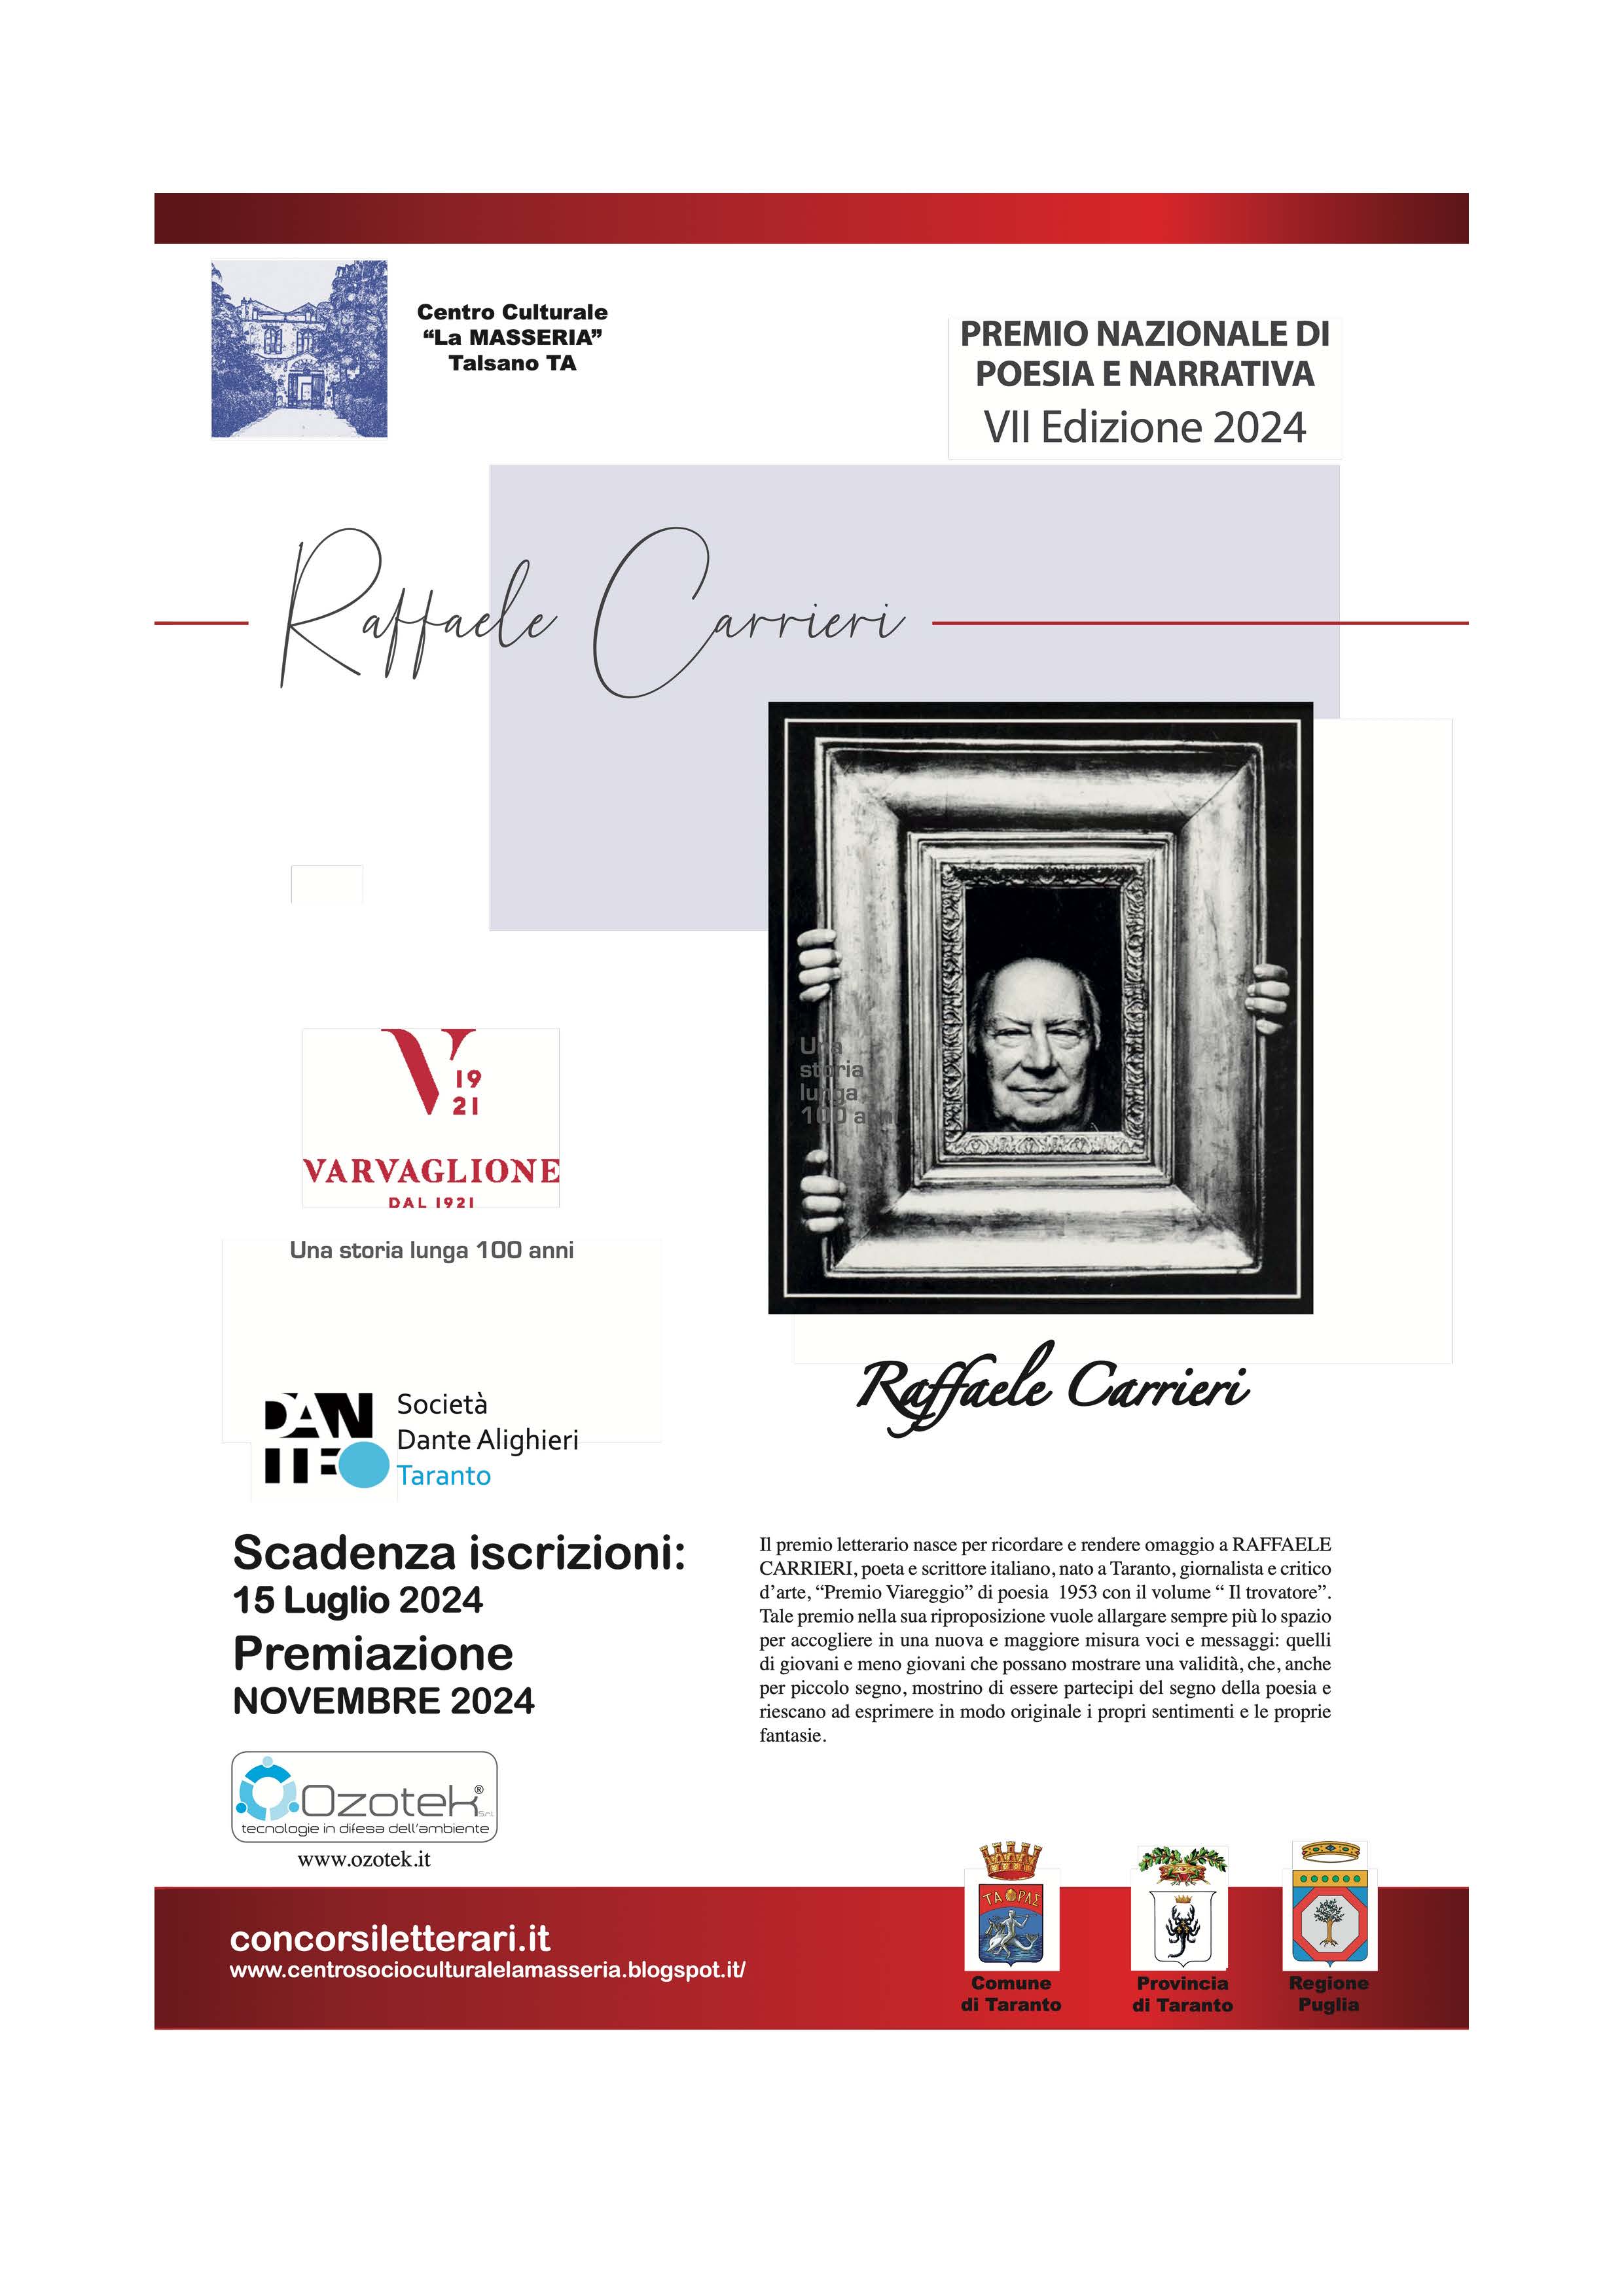 Premio Nazionale di Poesia e Narrativa "Raffaele Carrieri" VII Edizione 2024